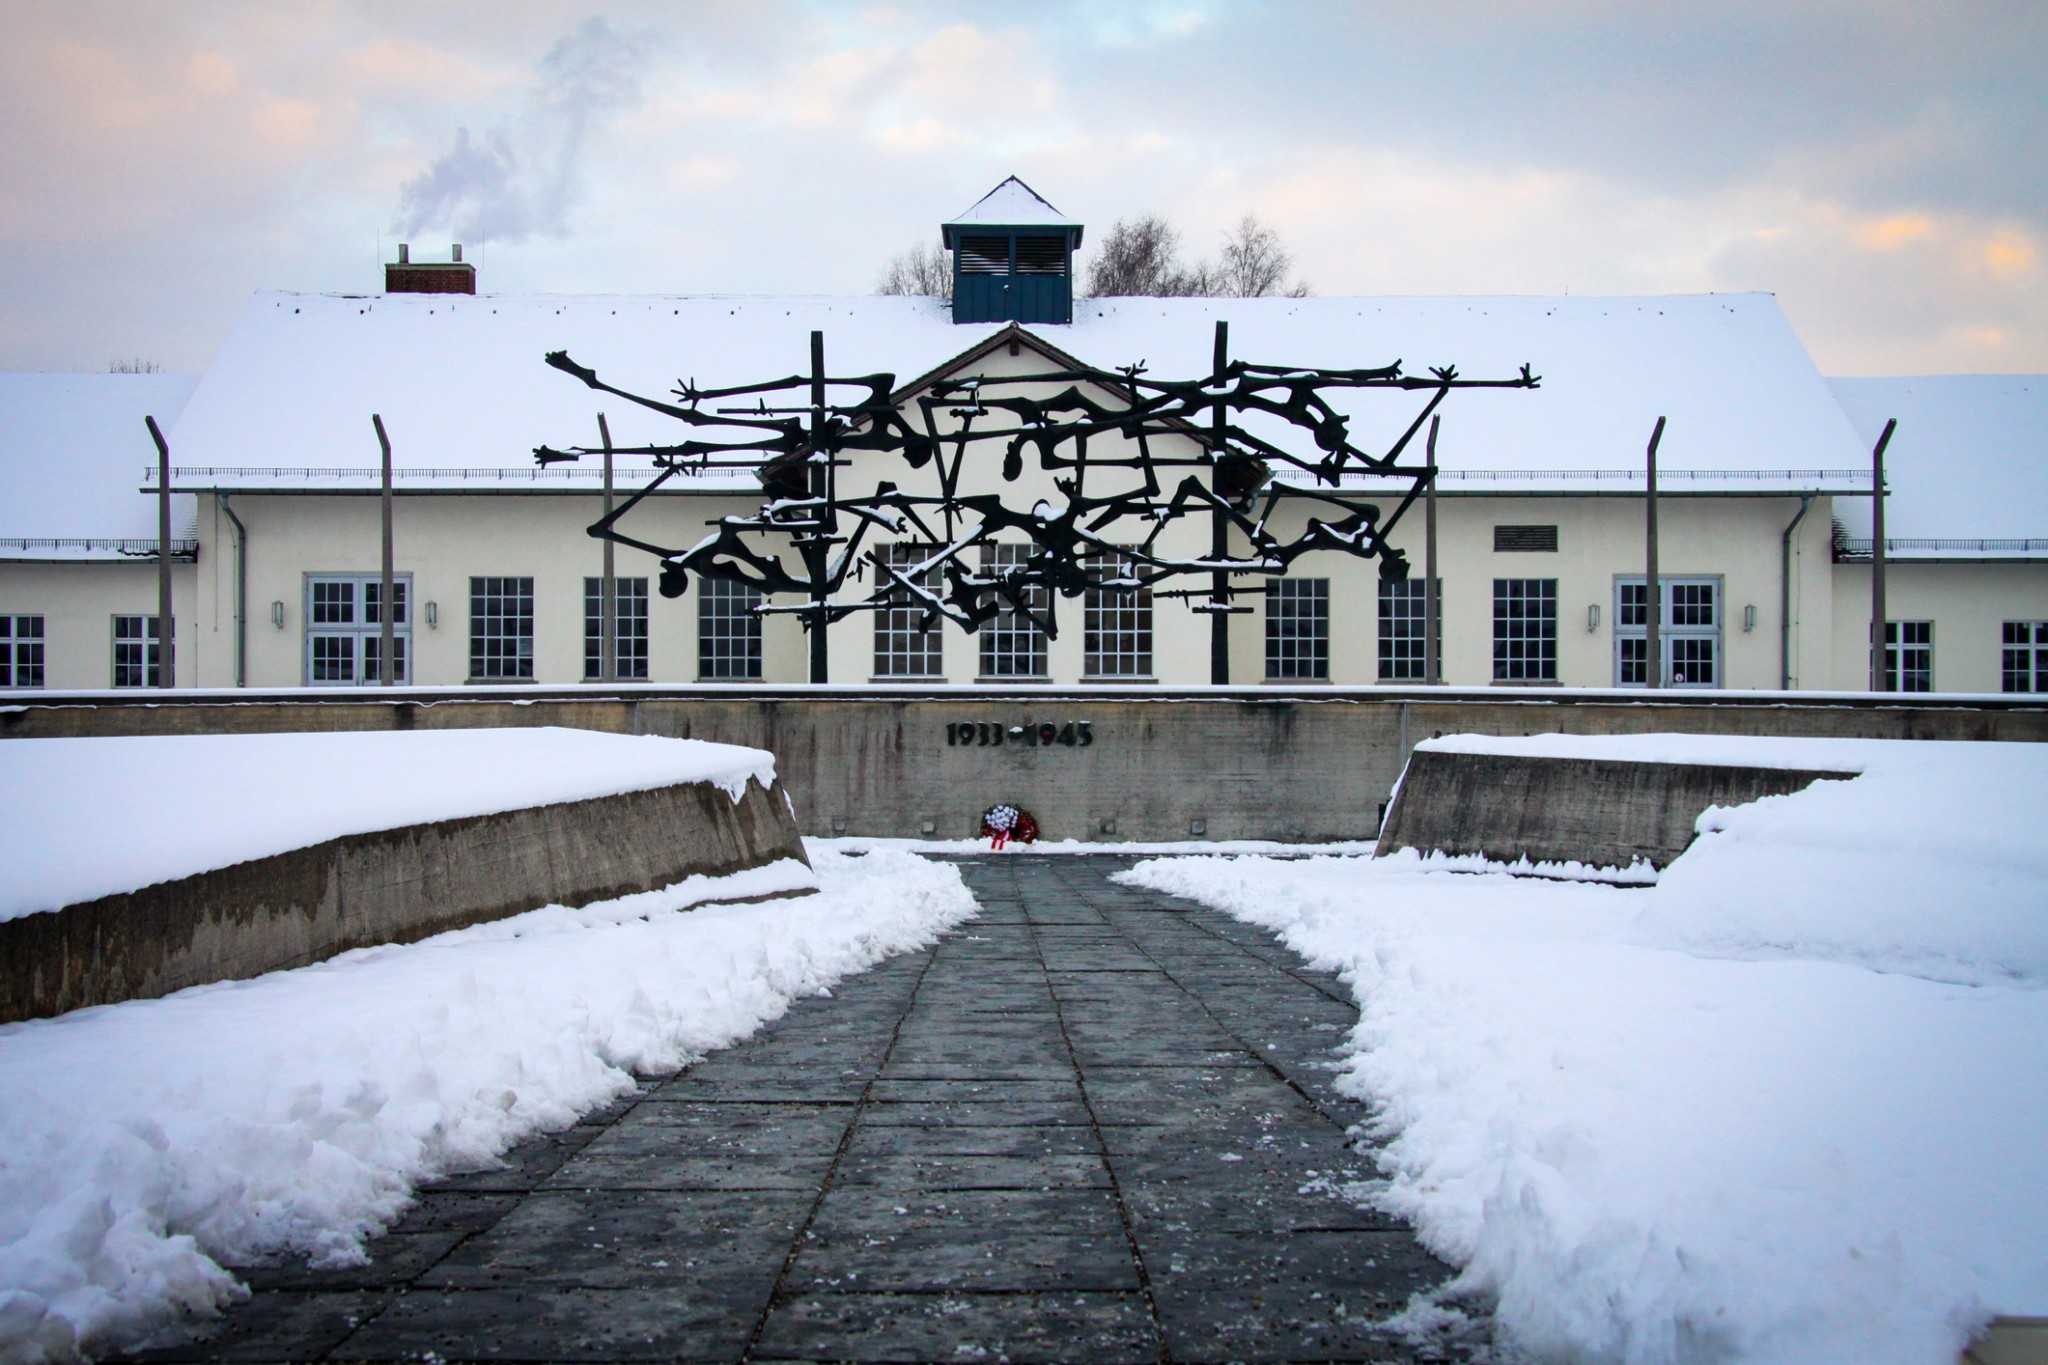 Dachau camp and sculpture.